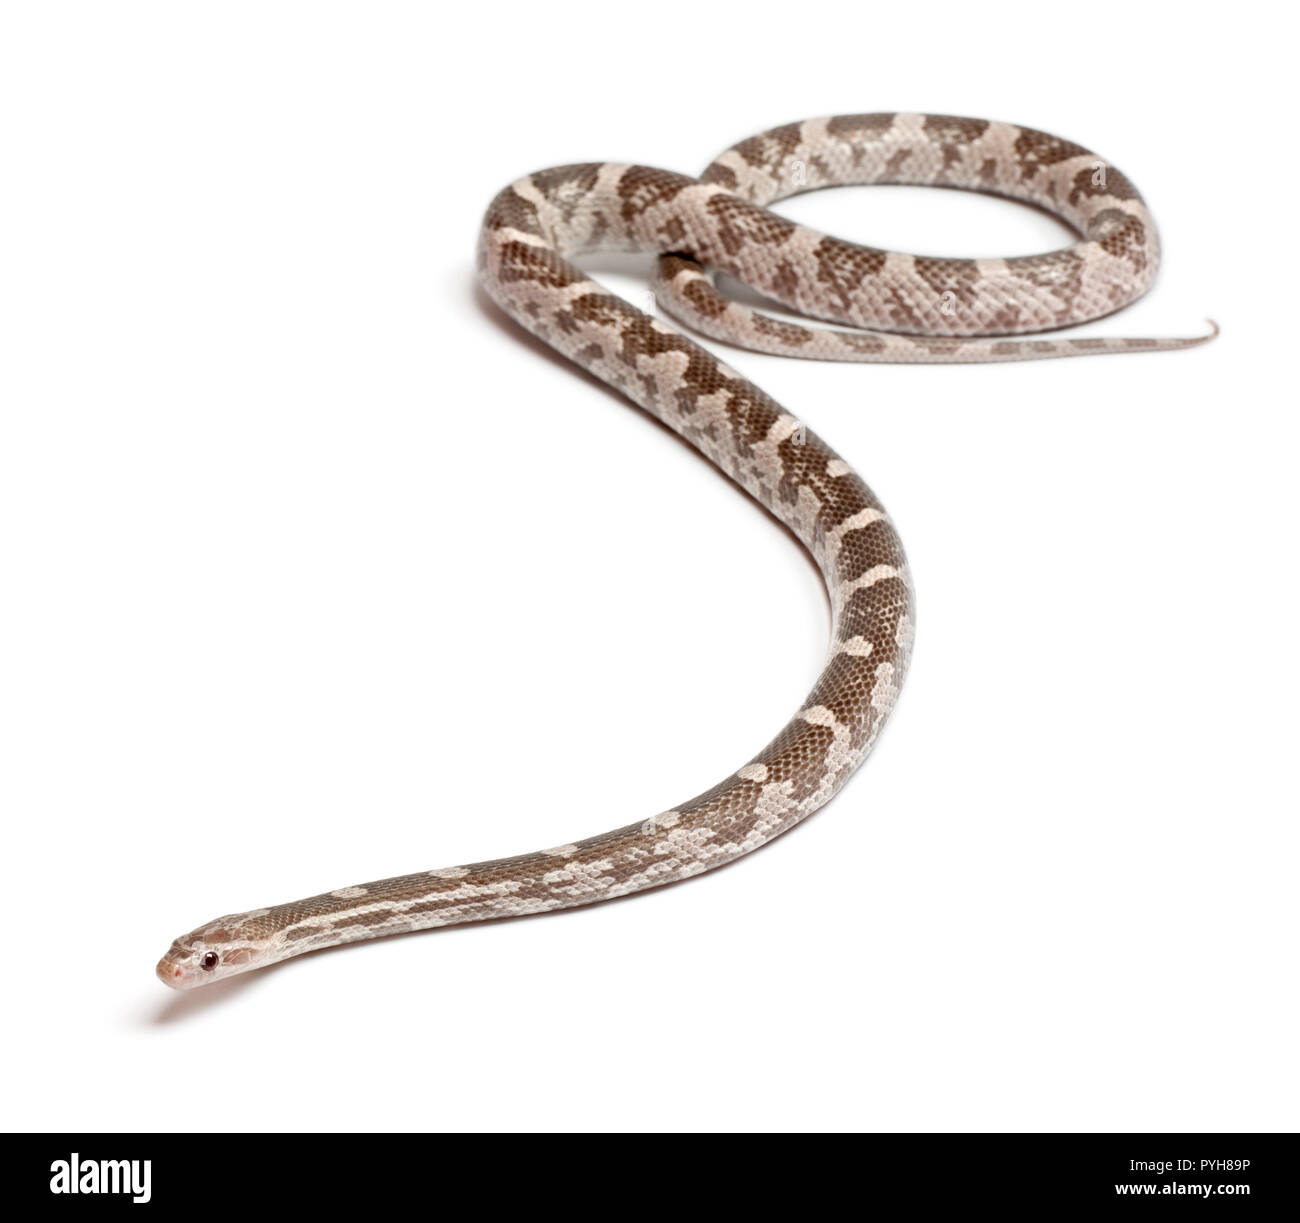 Lavendel Mais Schlange oder Rote Ratte Schlange, Pantherophis guttatus, vor weißem Hintergrund Stockfoto